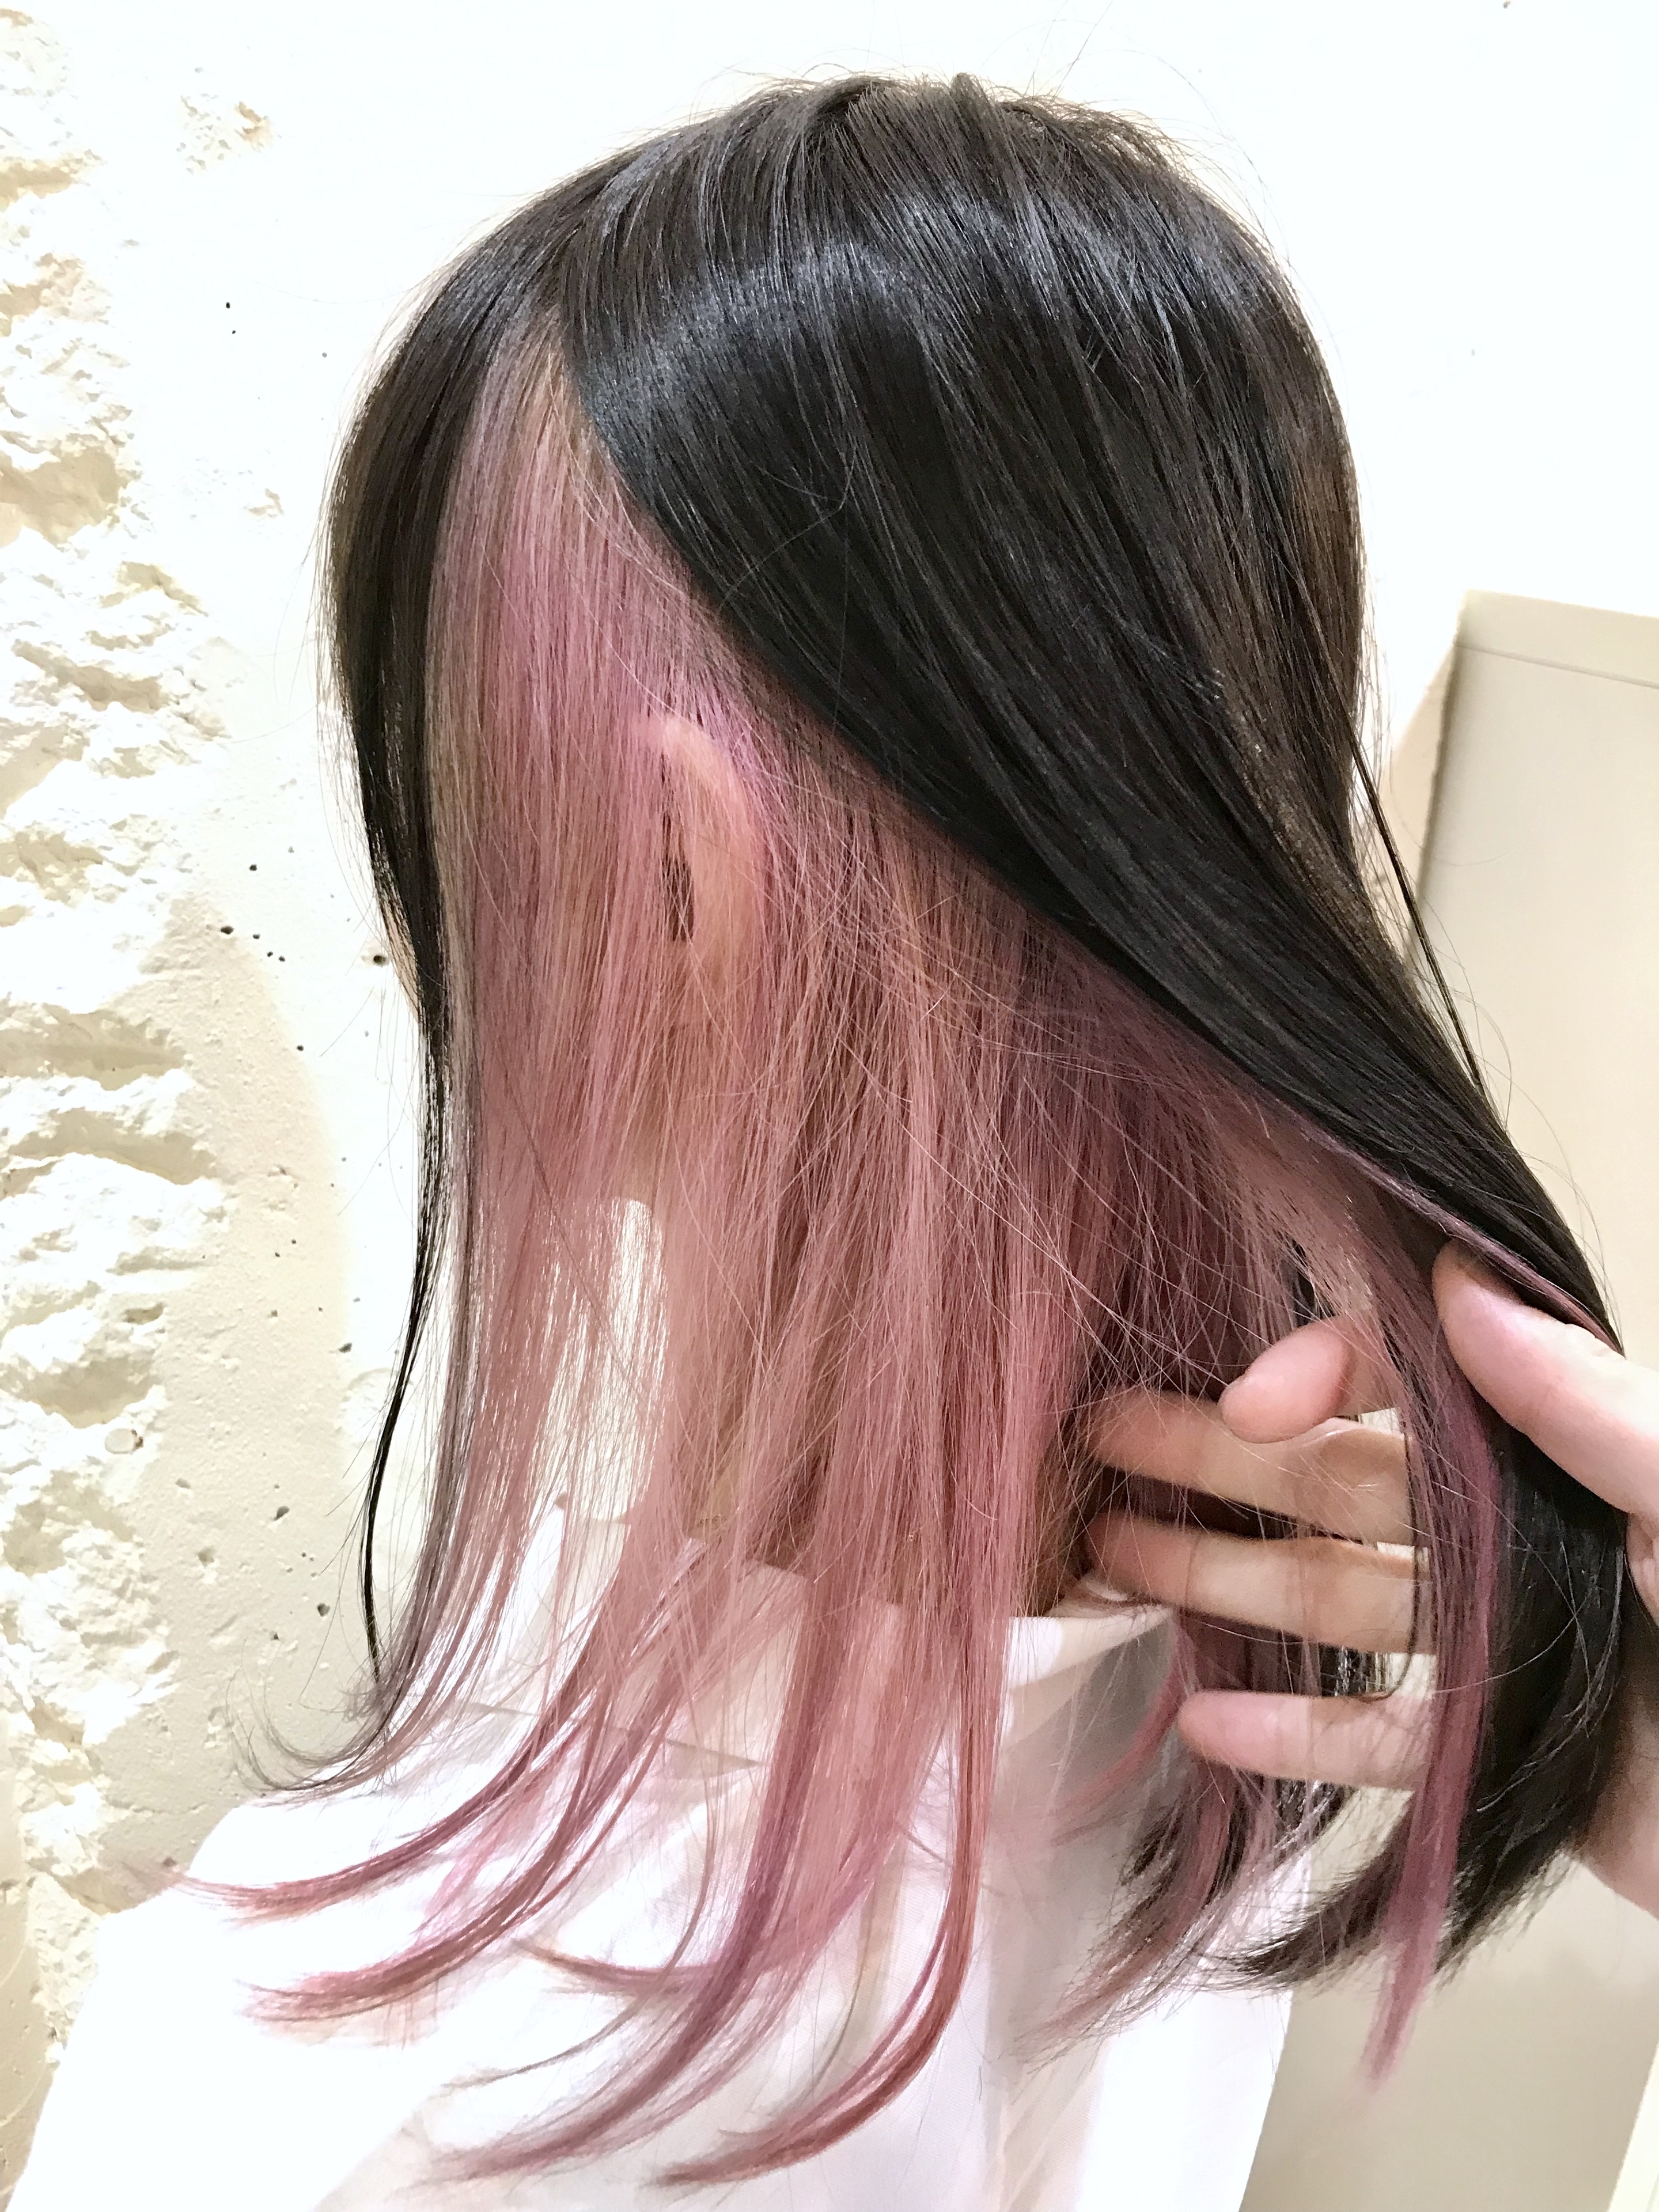 人気のインナーカラー 憧れの人気の髪色 髪型 アレンジ アッシュグレー ピンク 青 紫 緑 原宿 美容室 美容院